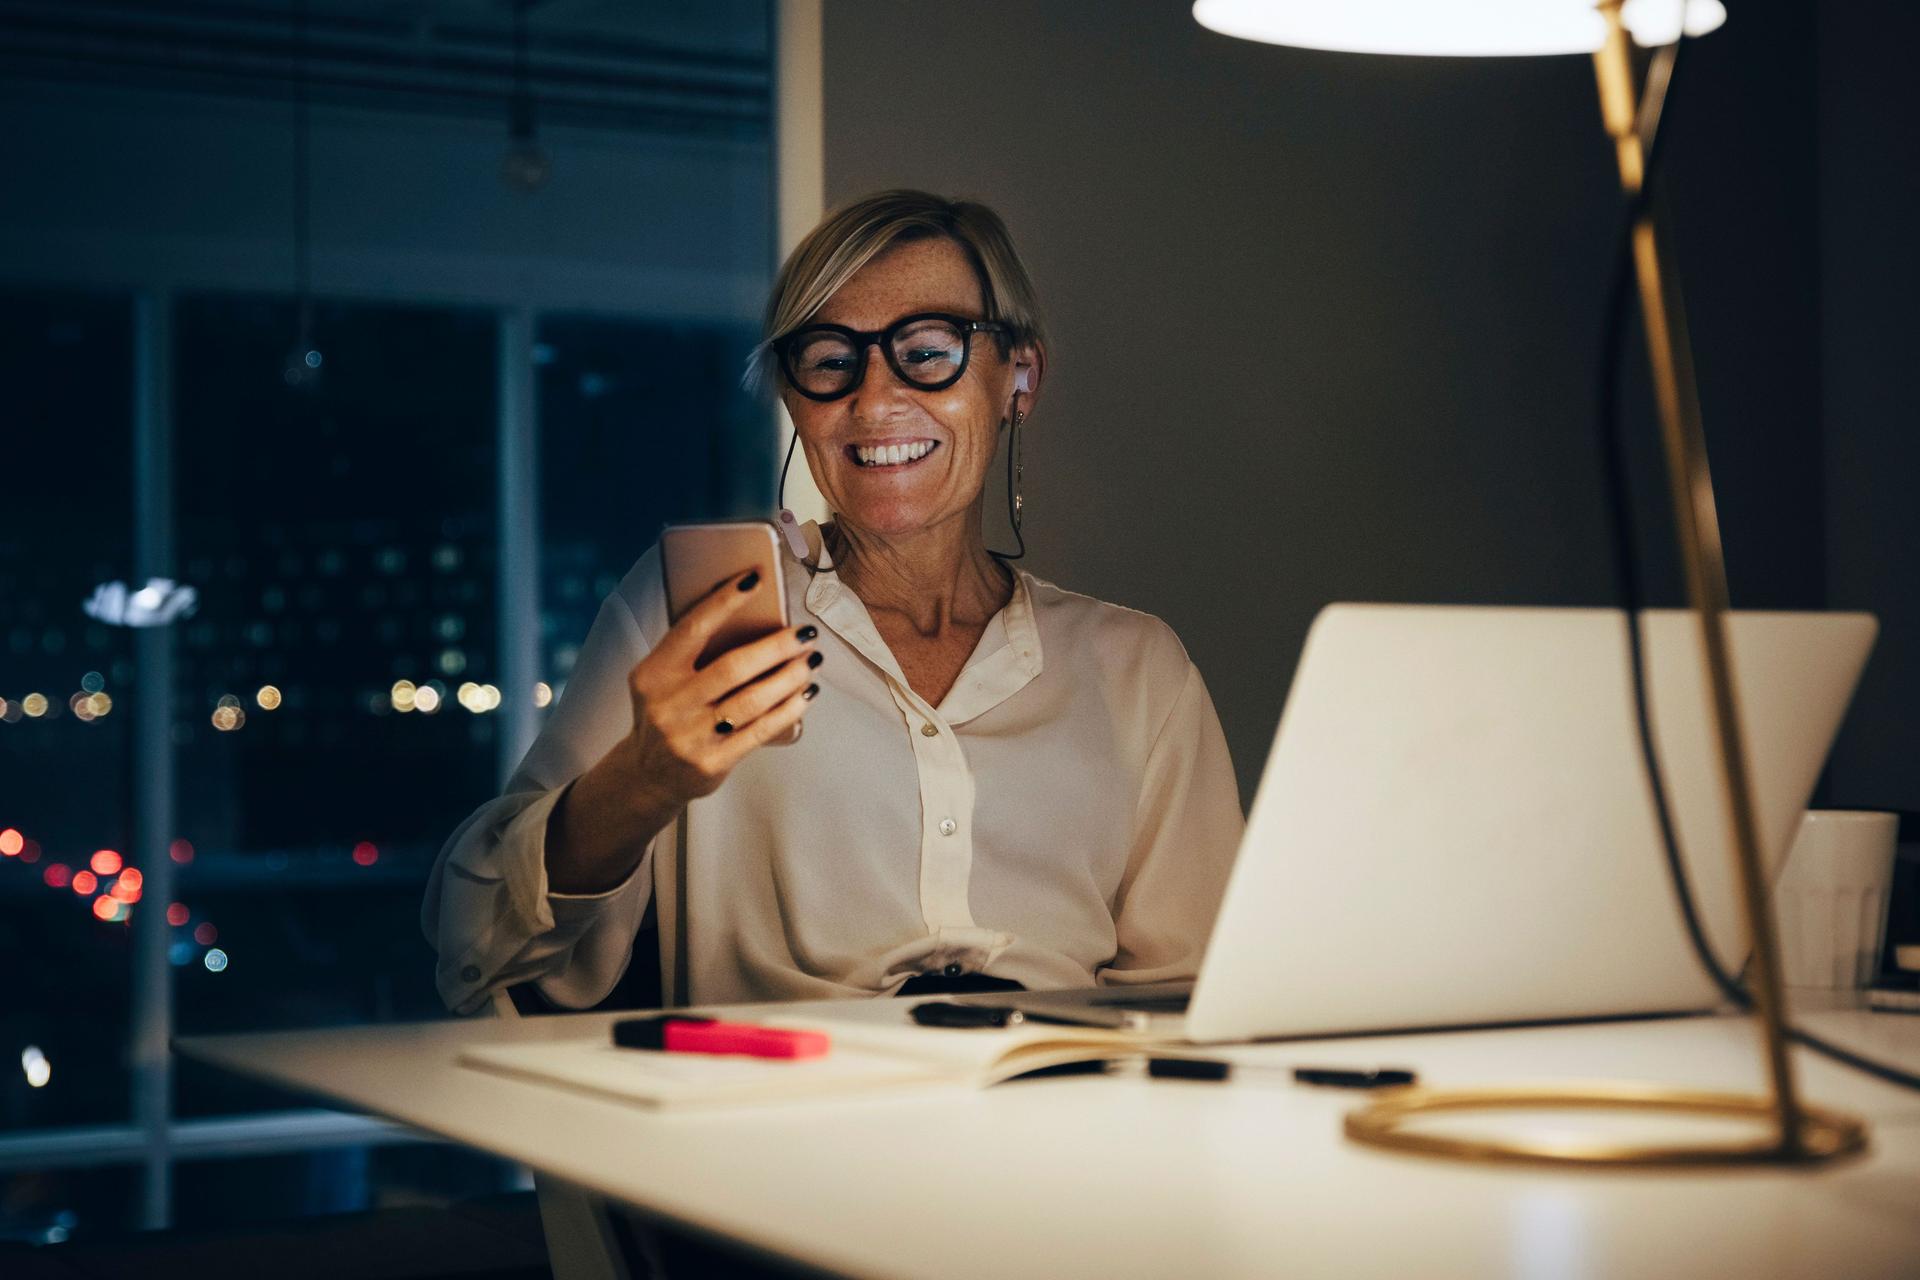 Lächelnde Frau sitzt mit Smartphone in der Hand an einem Schreibtisch. Ihr Laptop steht auf dem Tisch. Durch das Fenster sieht man Lichter einer Stadt, es ist dunkel.